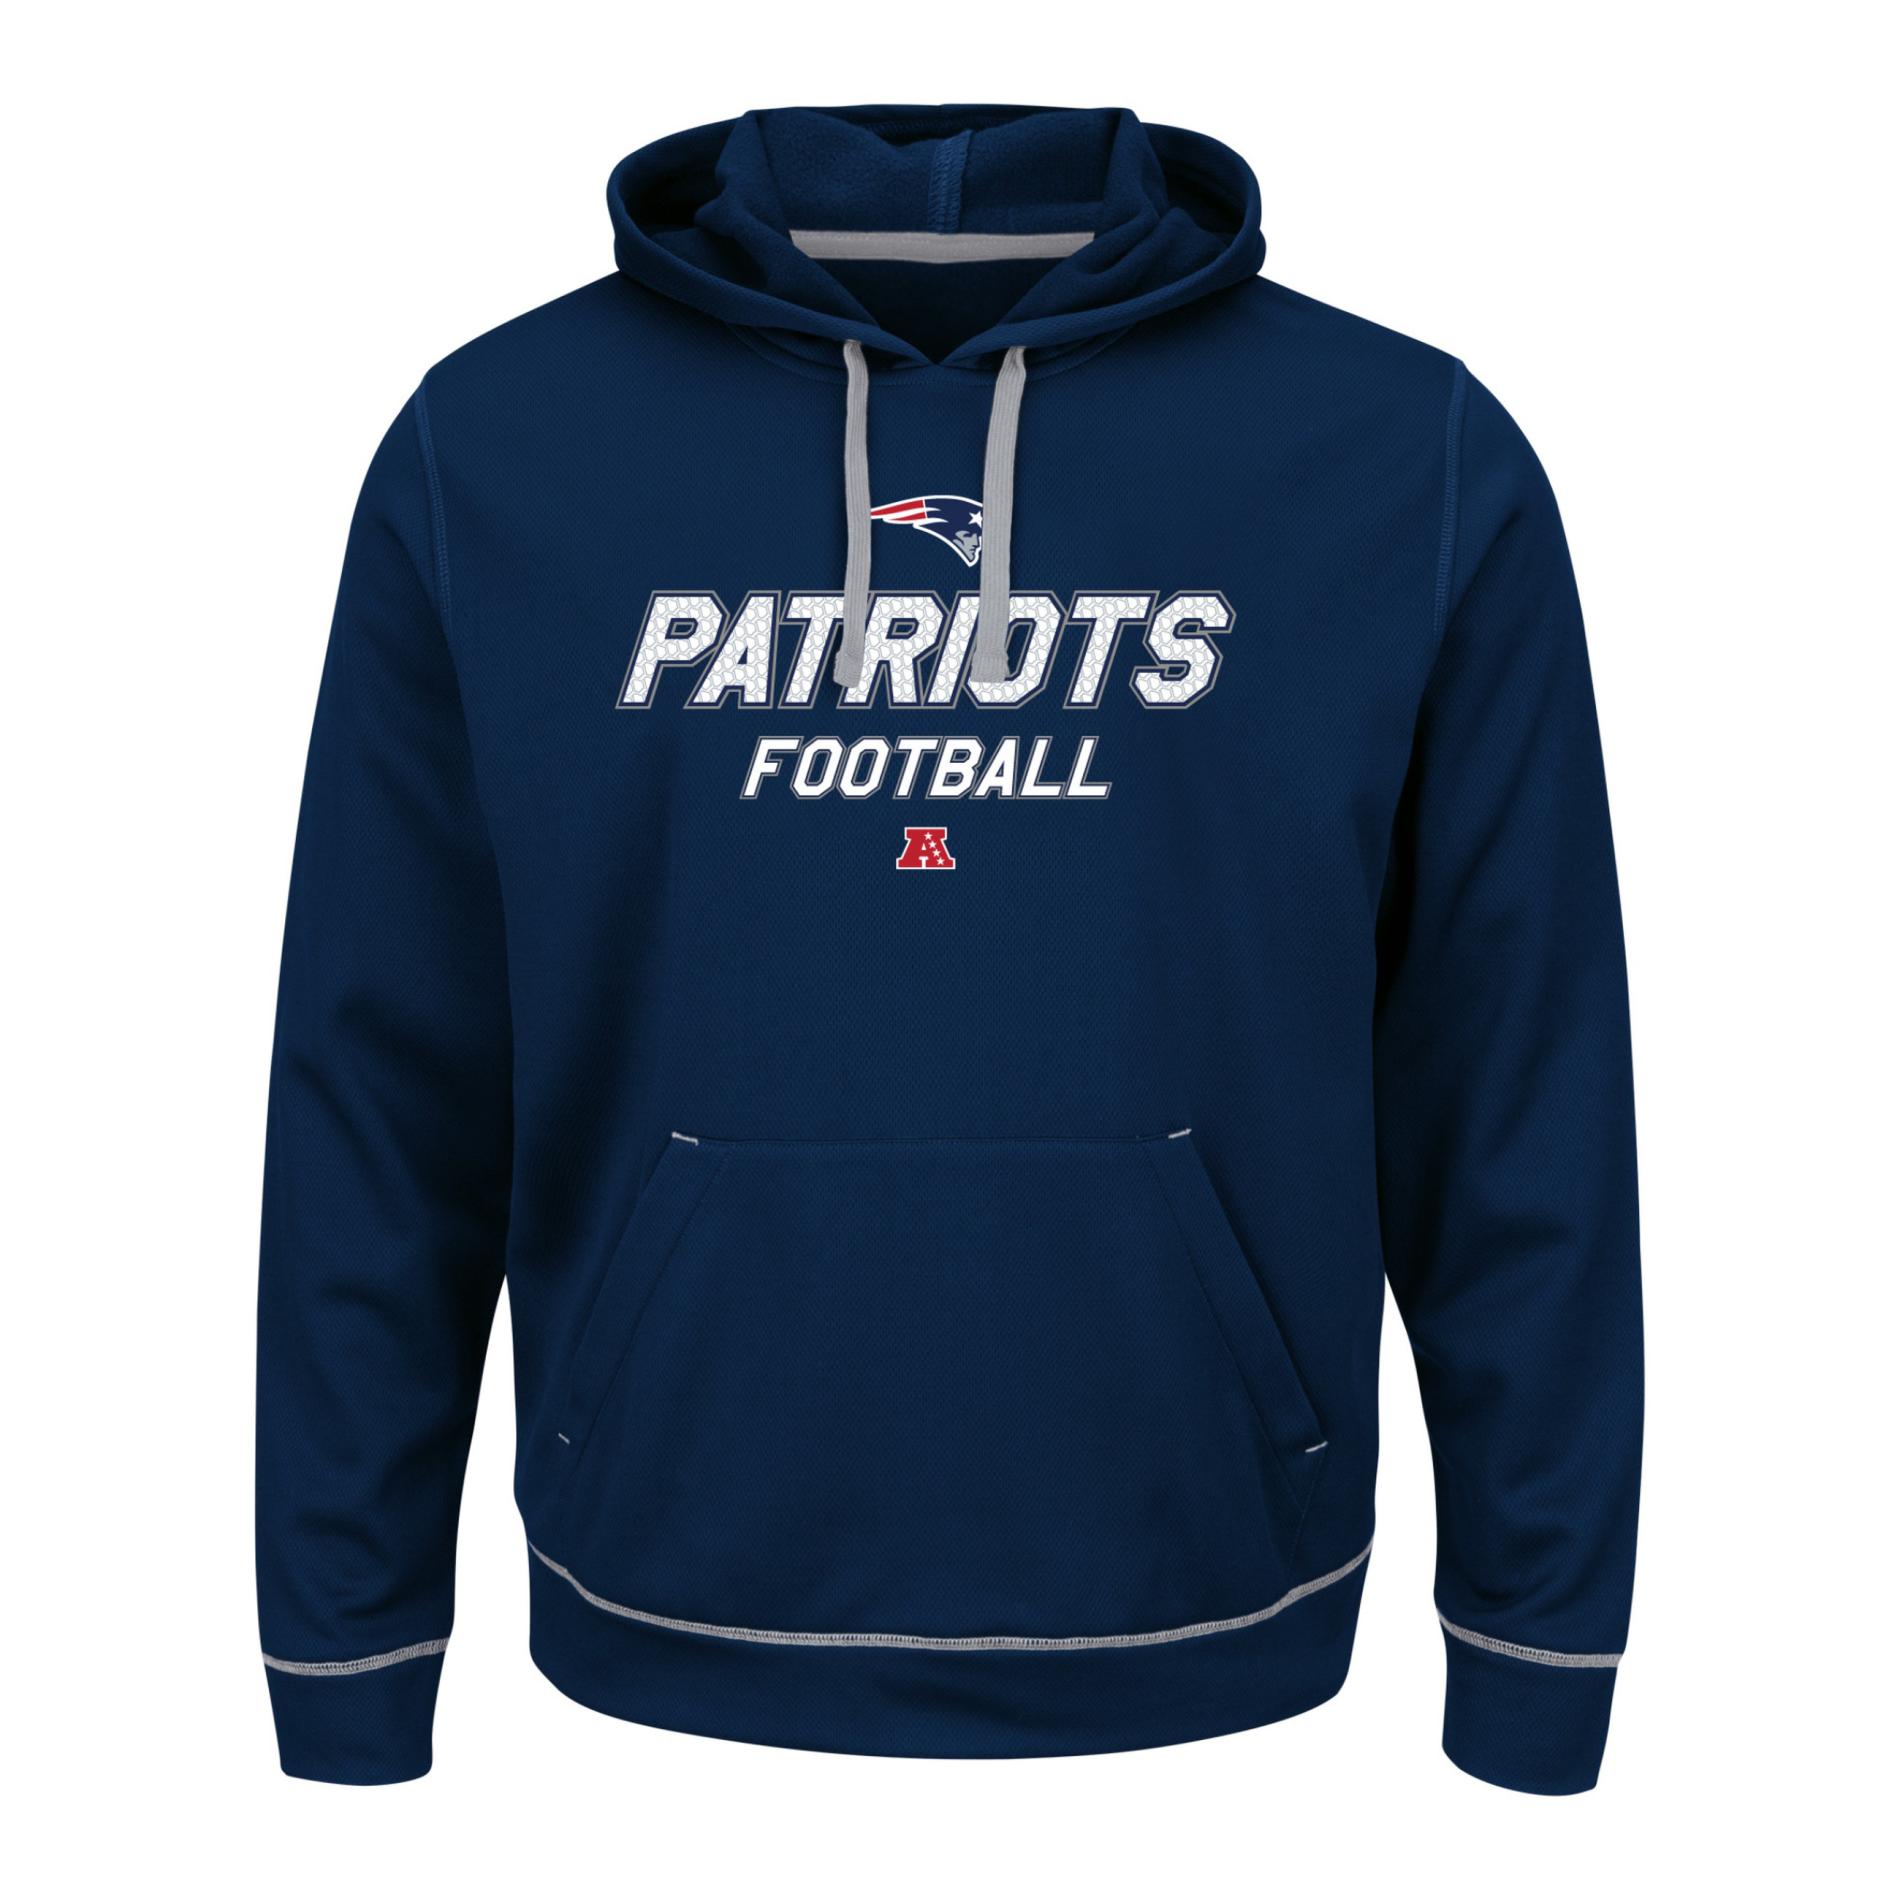 NFL Men's Hooded Sweatshirt - New England Patriots